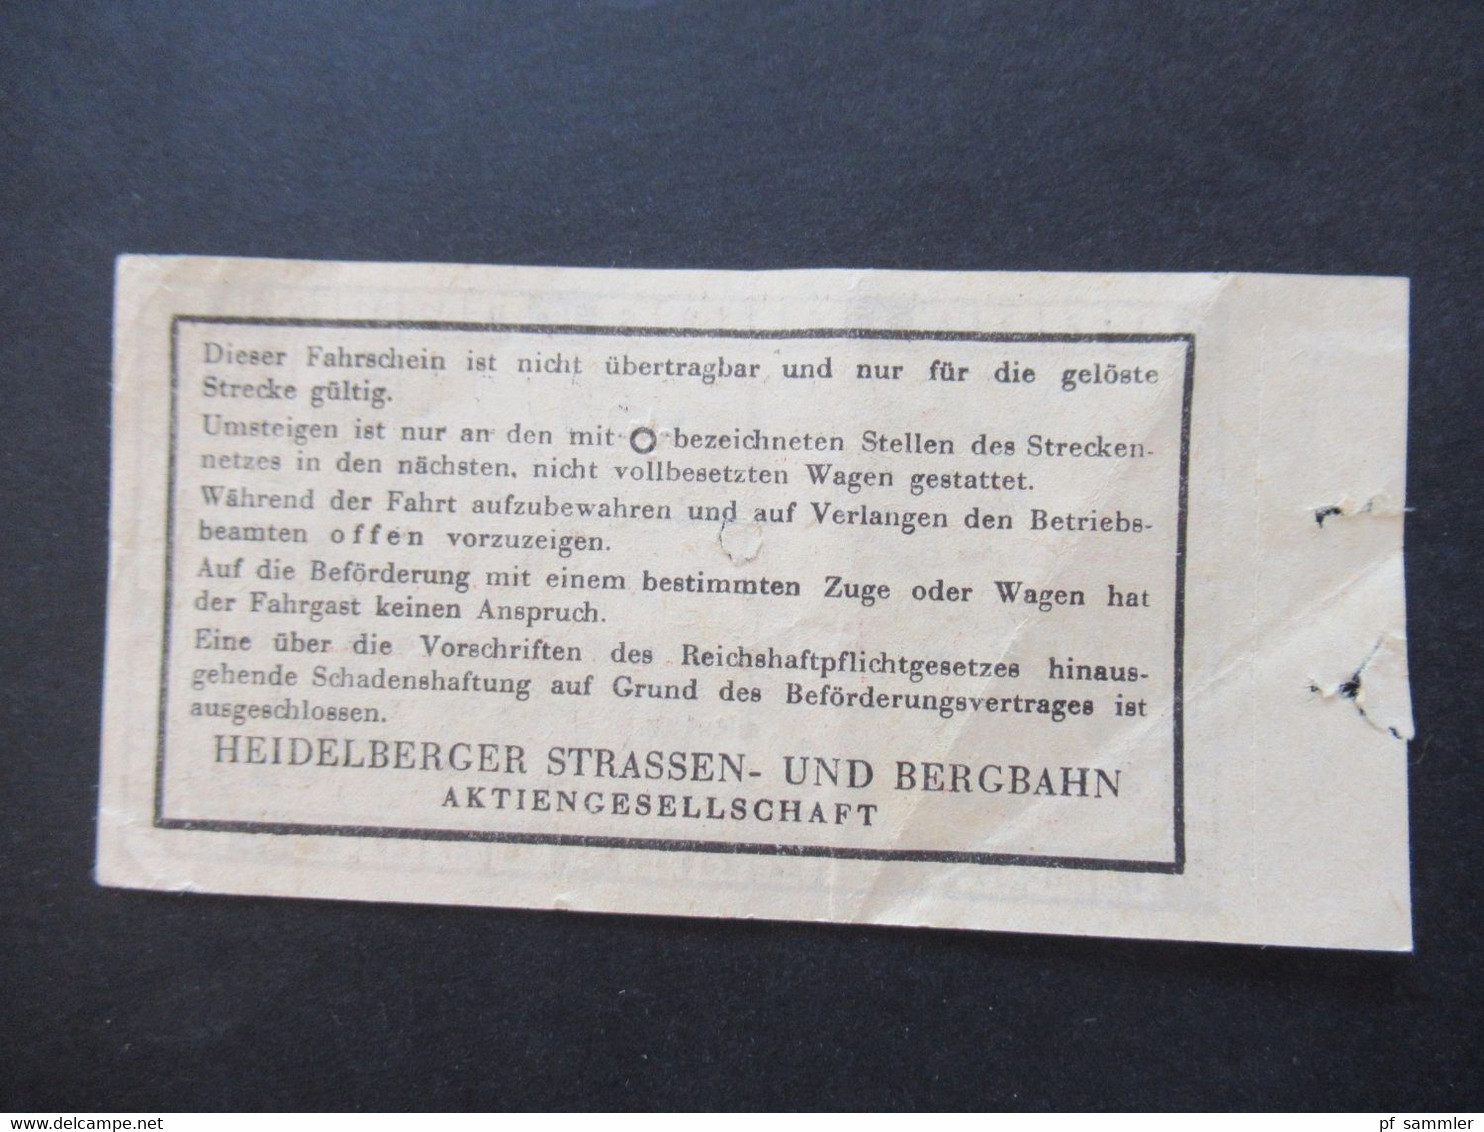 Ticket etliche Fahrscheine 1930 - 50er Jahre Heidelberger Straßen und Bergbahn AG Konvolut